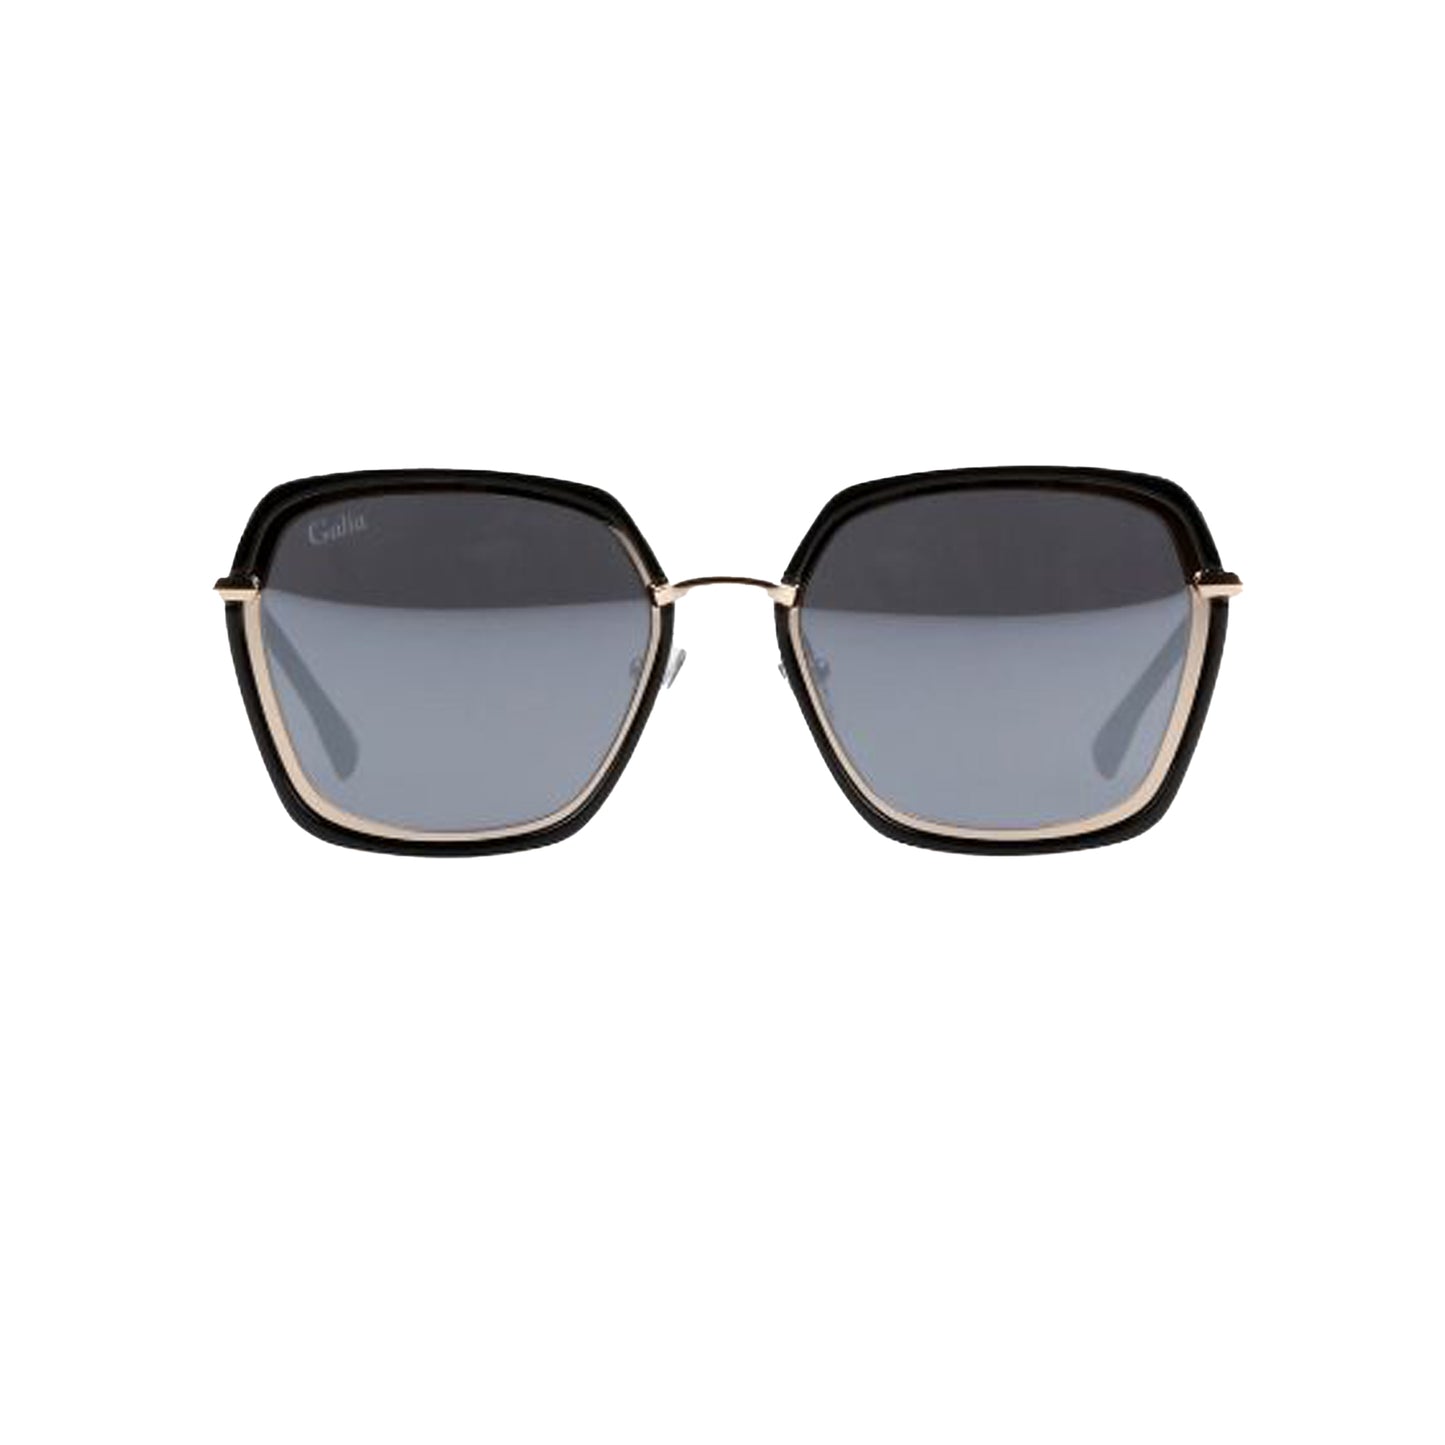 Galia Black Irregular Acetate Full Rim Sunglasses